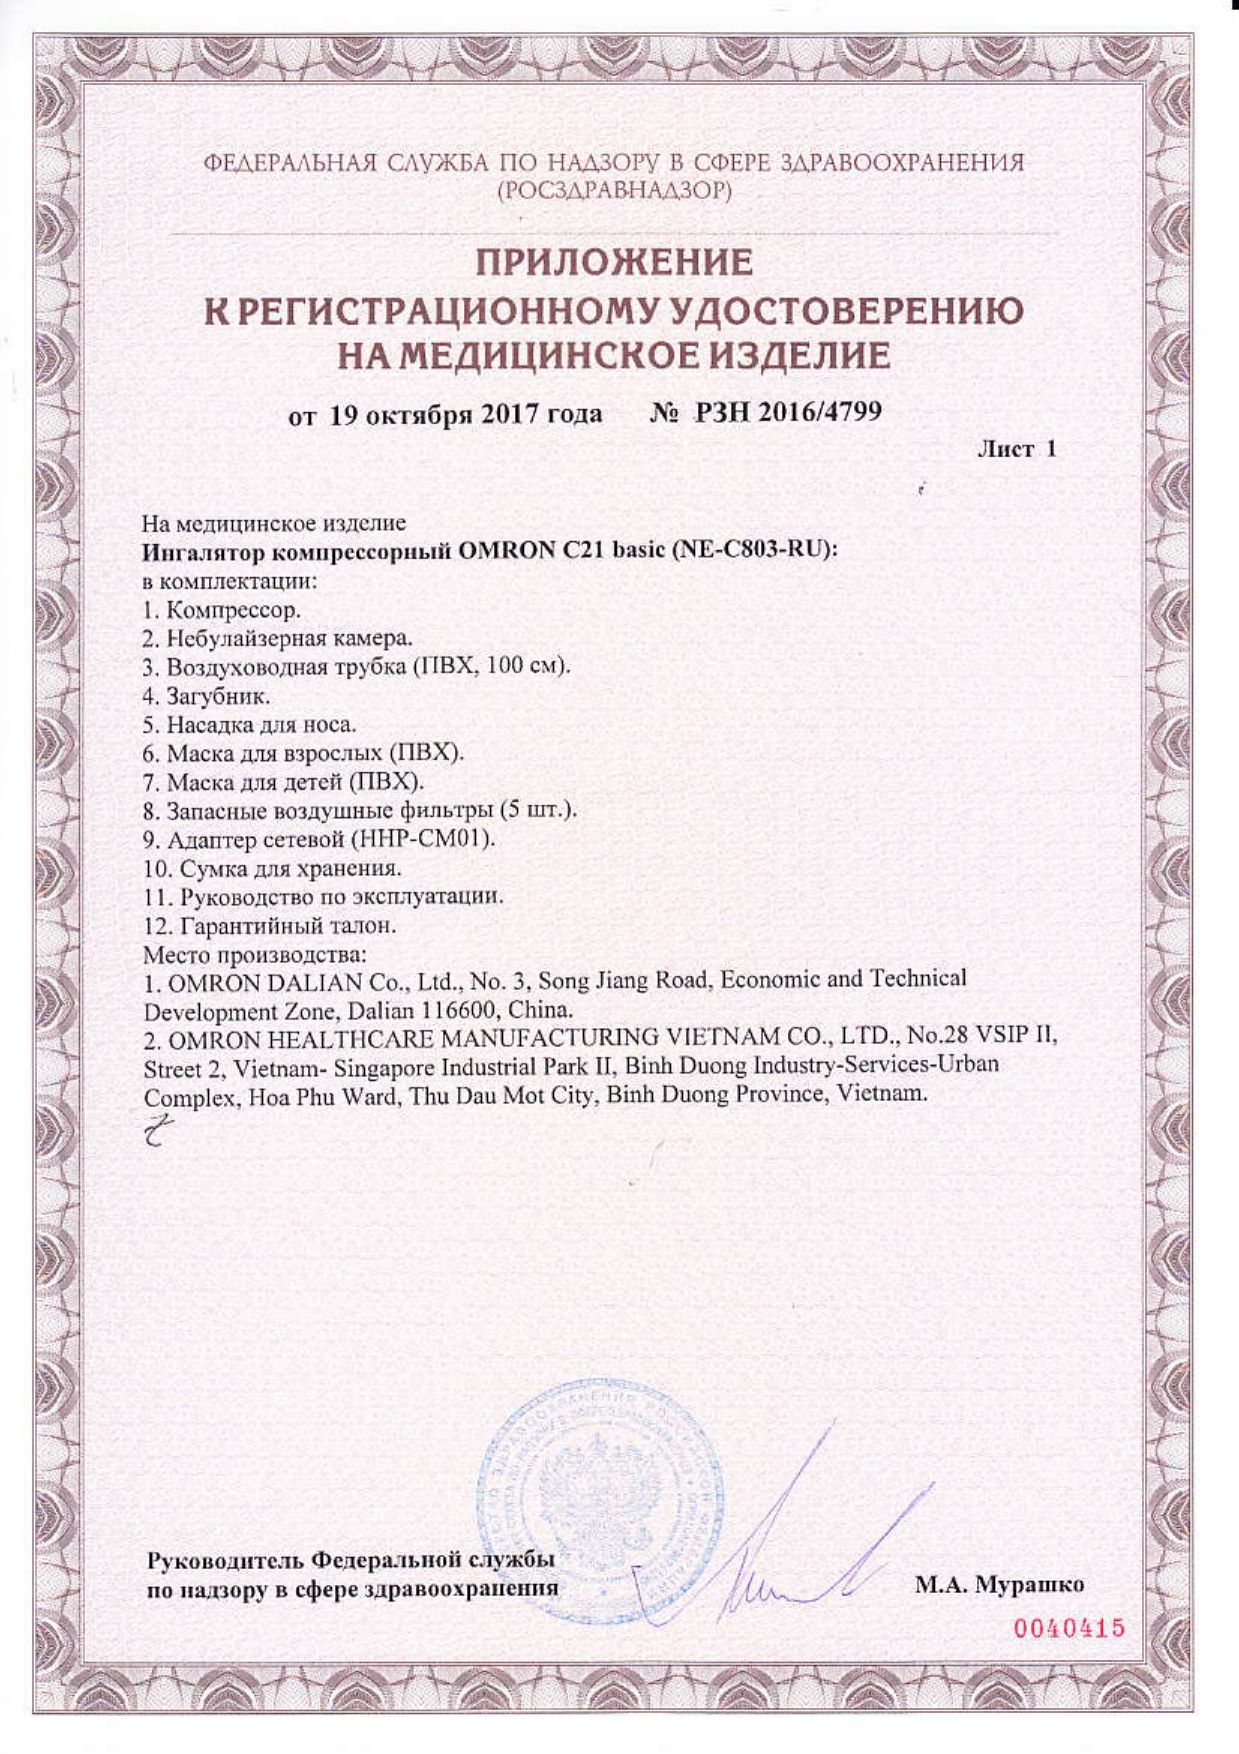 Ингалятор Omron C21 Basic компрессорный сертификат